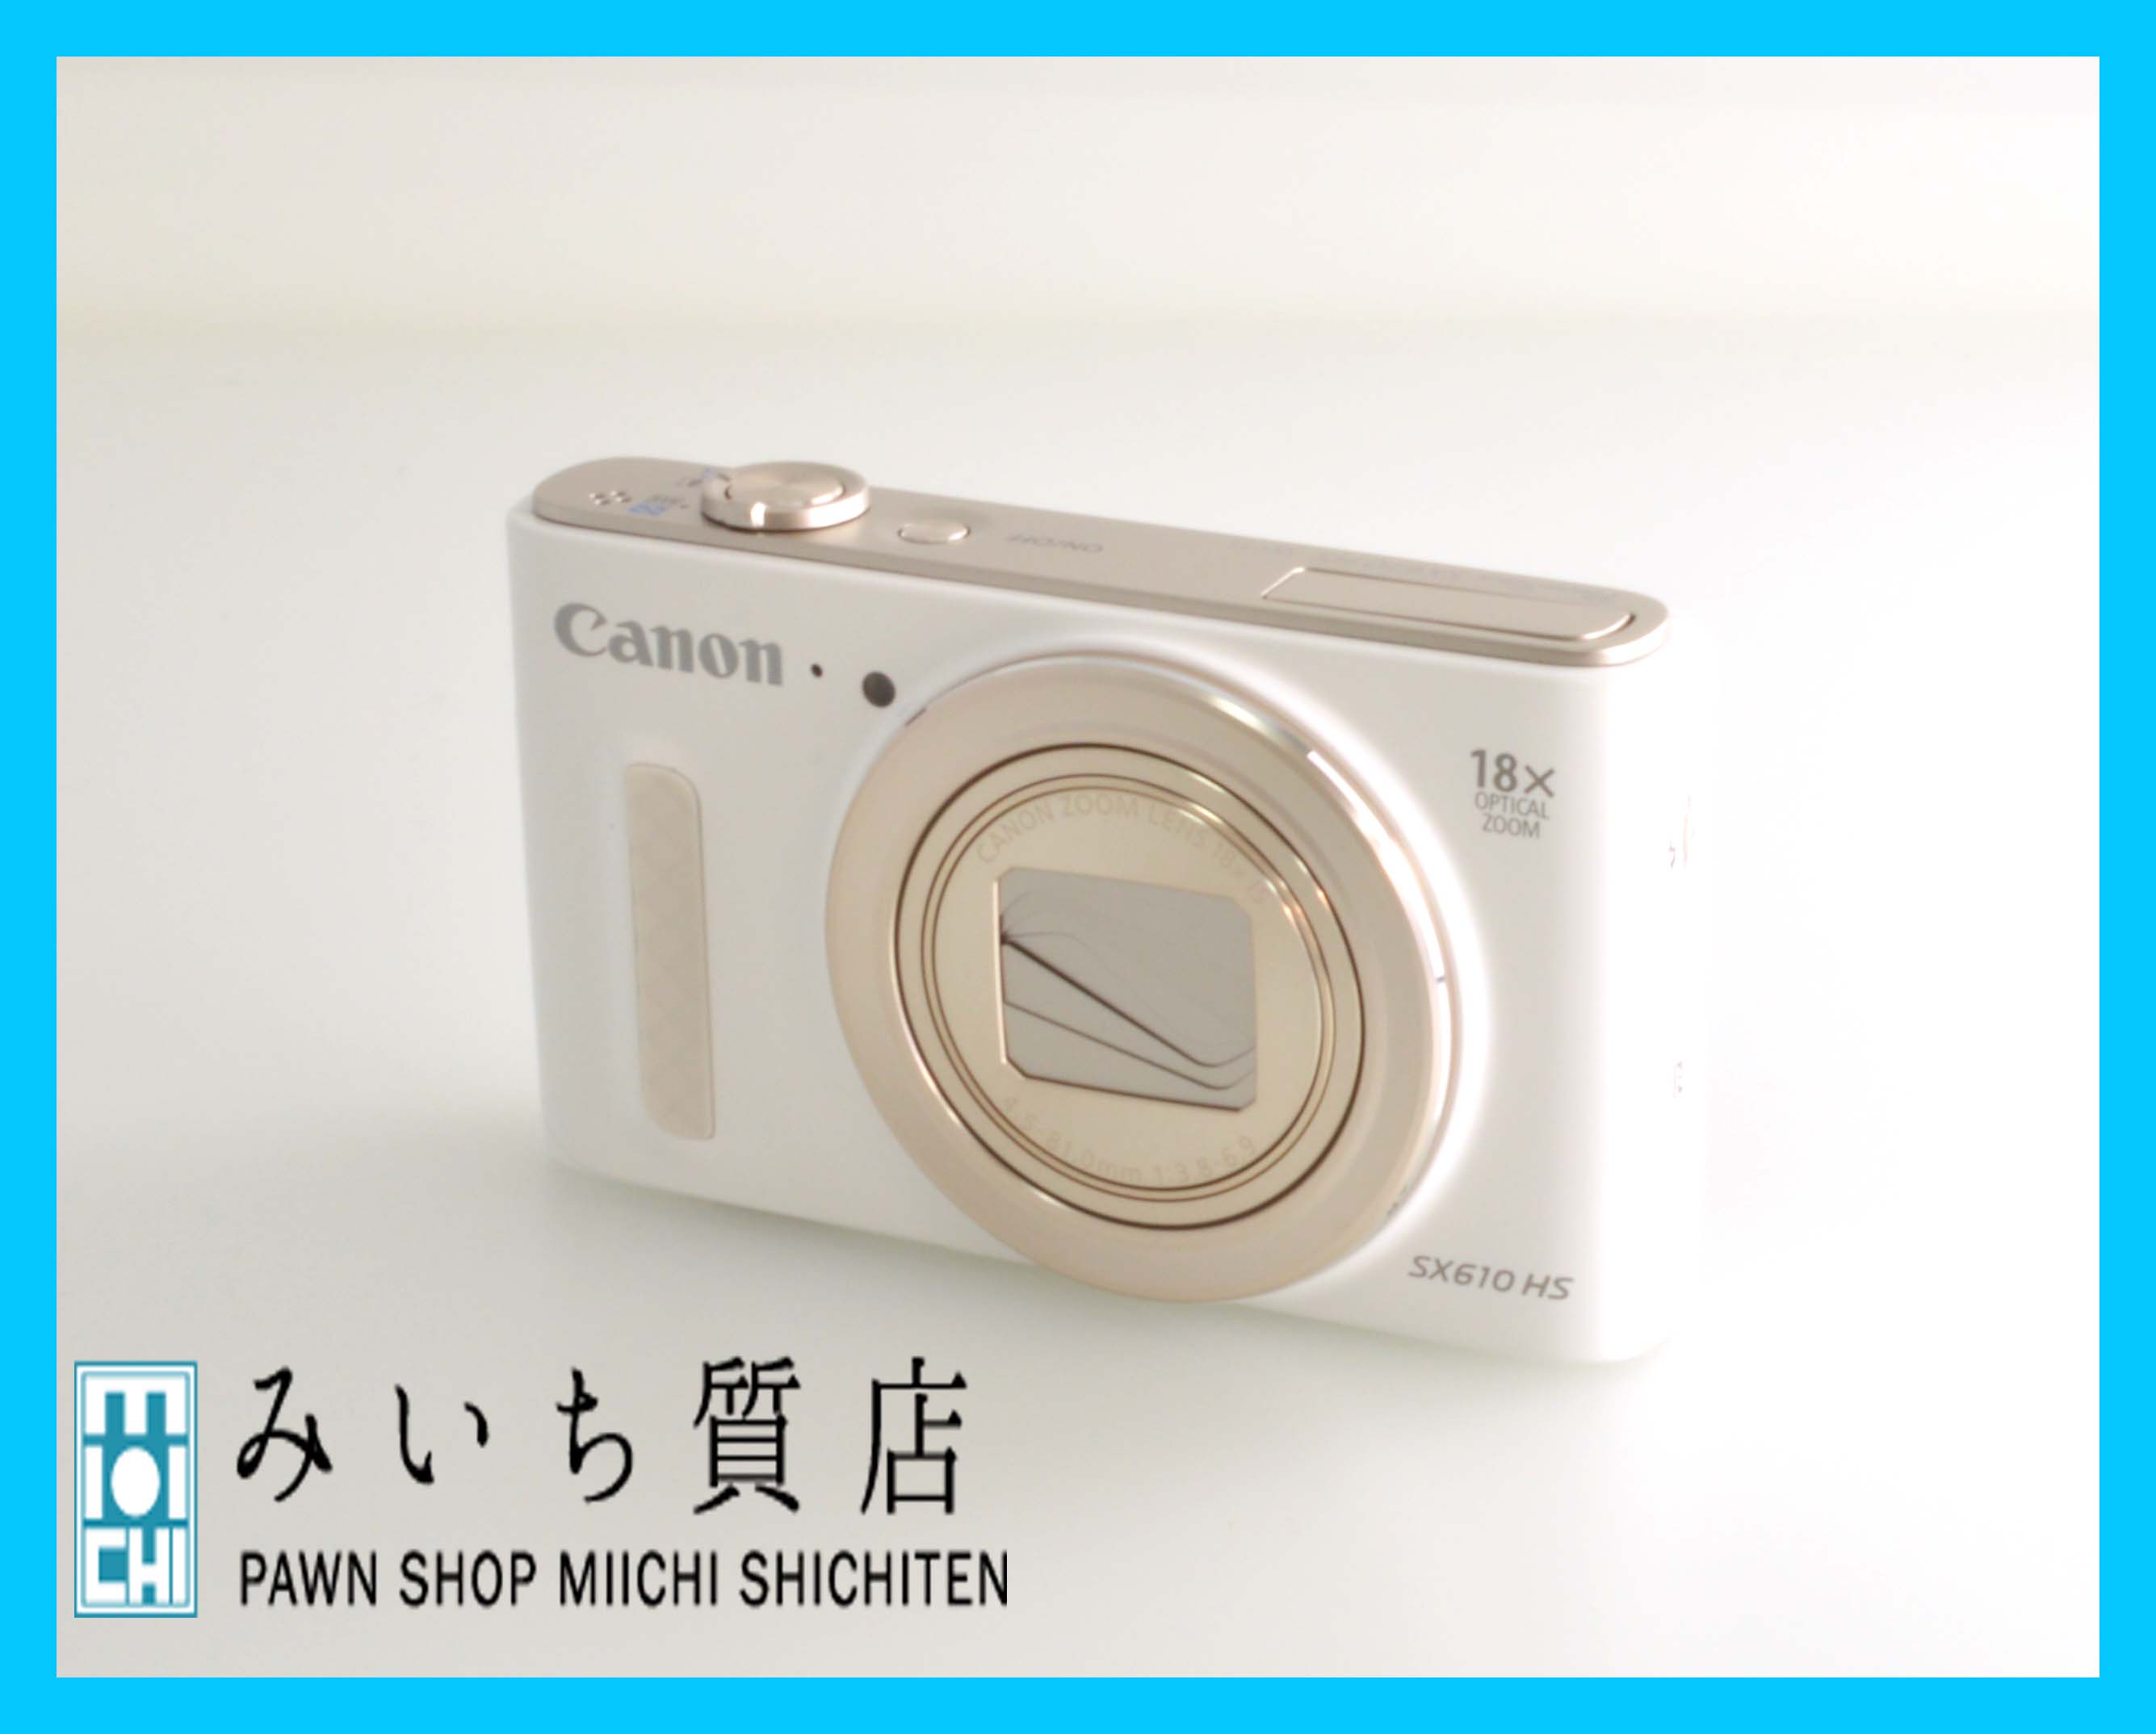 キャノン デジタルカメラ PowerShot SX610 HS - カメラ・電化製品の質